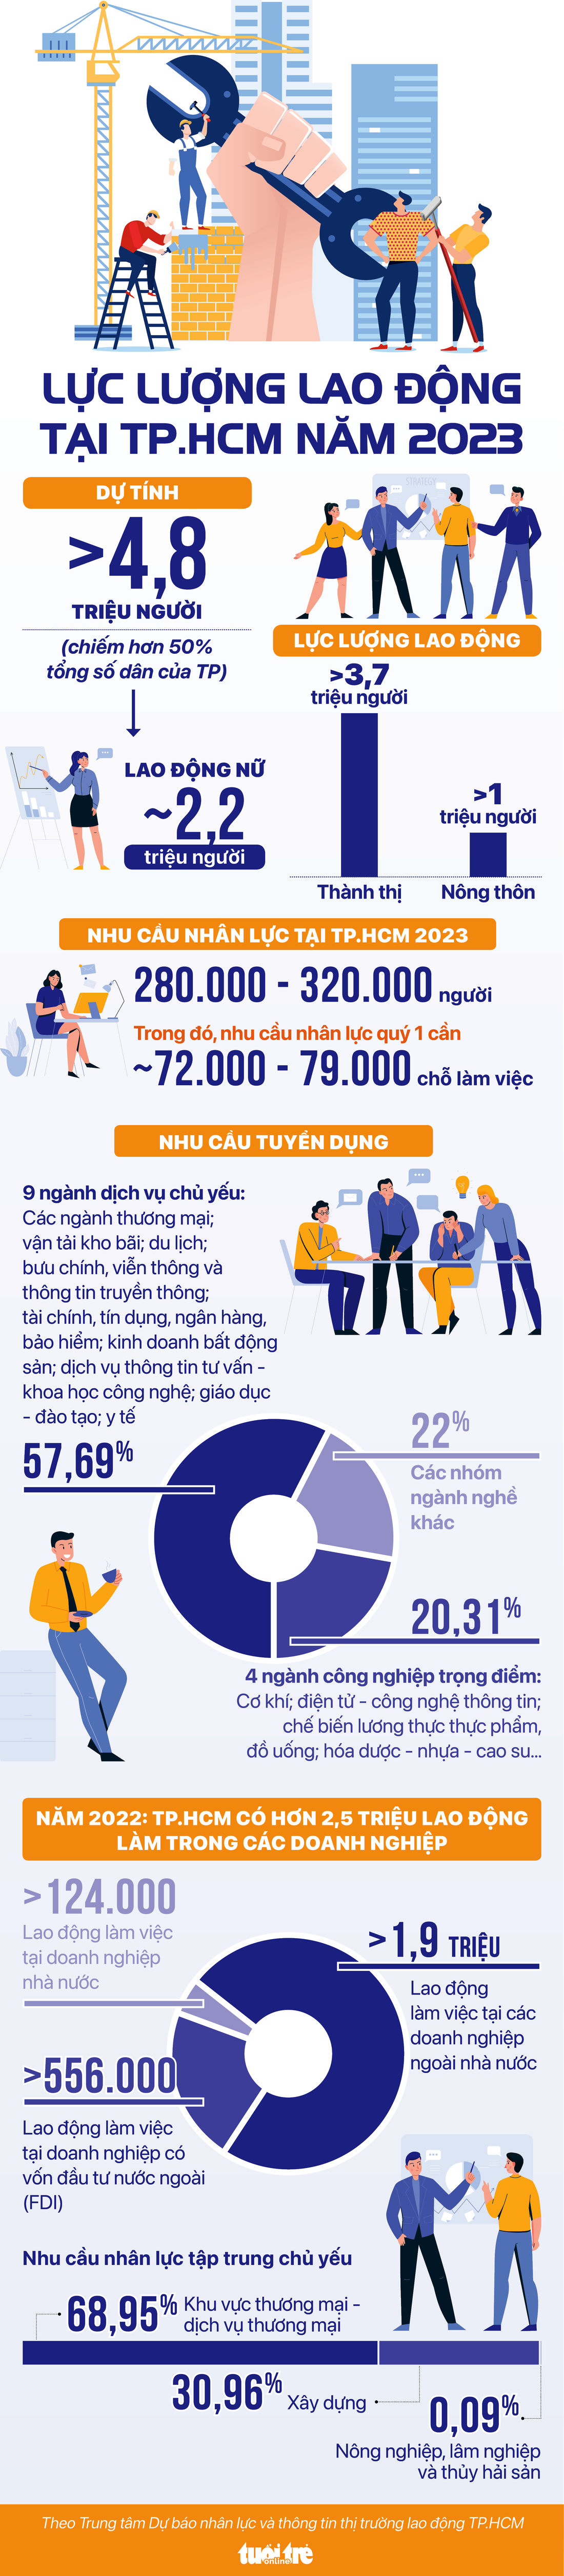 Infographic: TP.HCM hút gần 5 triệu lao động năm 2023 - Ảnh 1.